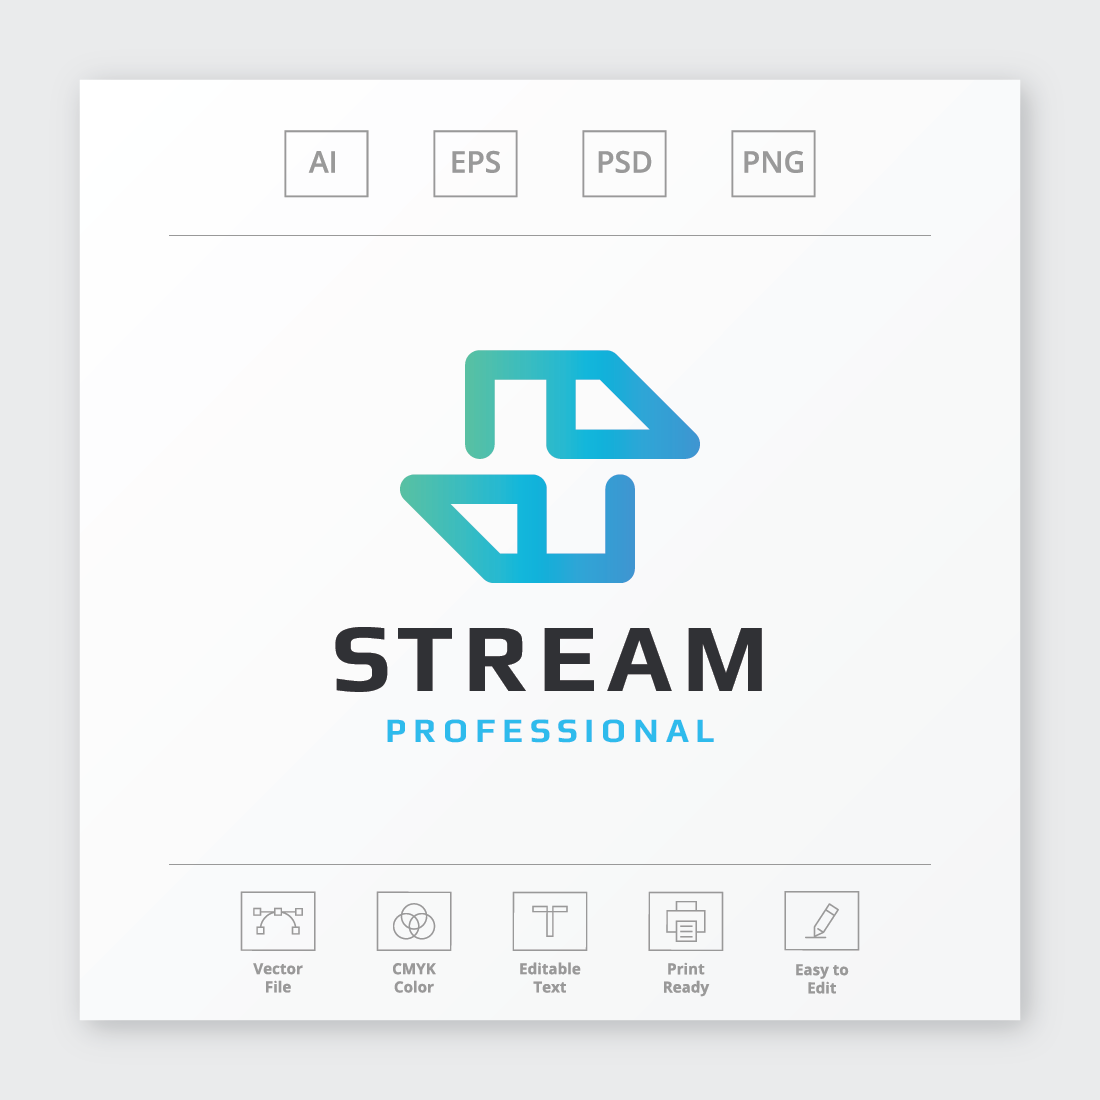 Stream Letter S Logo cover image.